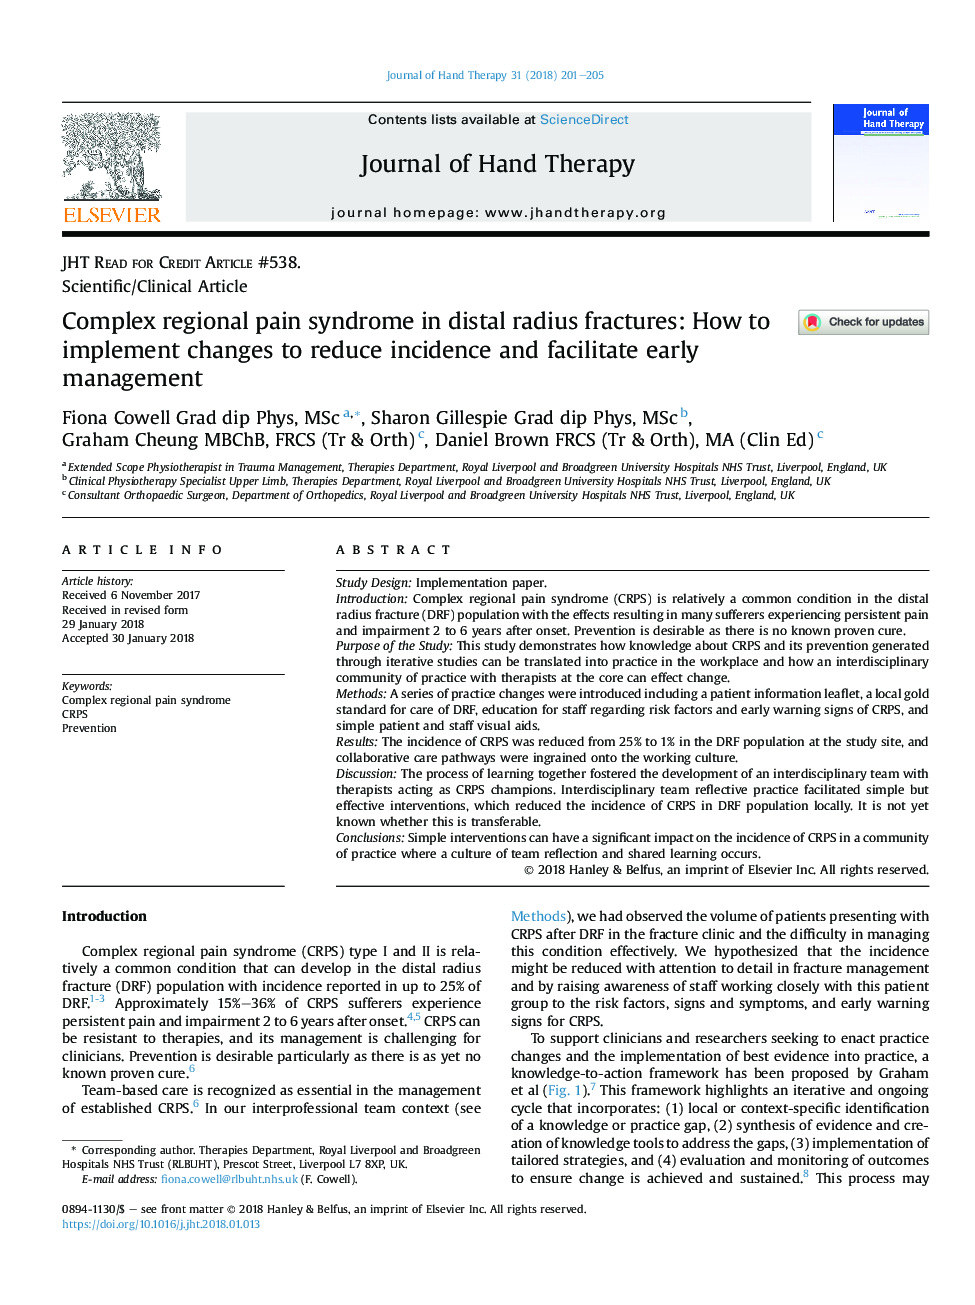 سندرم درد پیچیده منطقه ای در شکستگی شعاع دفاعی: چگونگی پیاده سازی تغییرات برای کاهش بروز و تسهیل مدیریت زود هنگام 